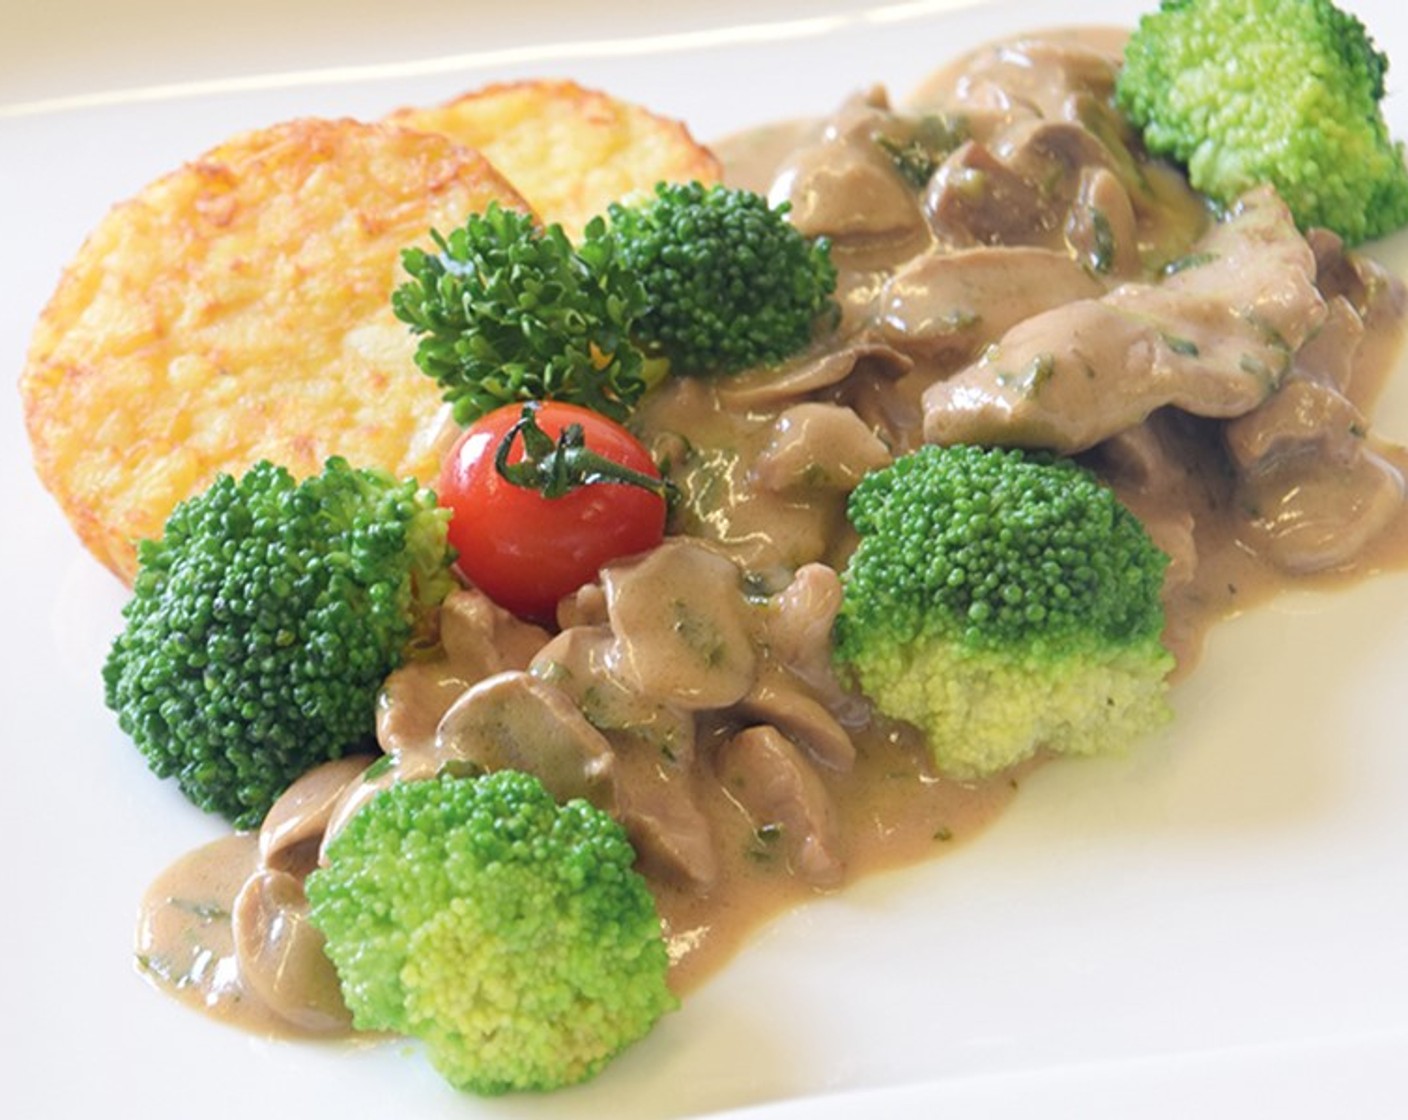 Zürcher Geschnetzeltes mit Champignonrahm-Sauce, Röstitaler und Broccoli